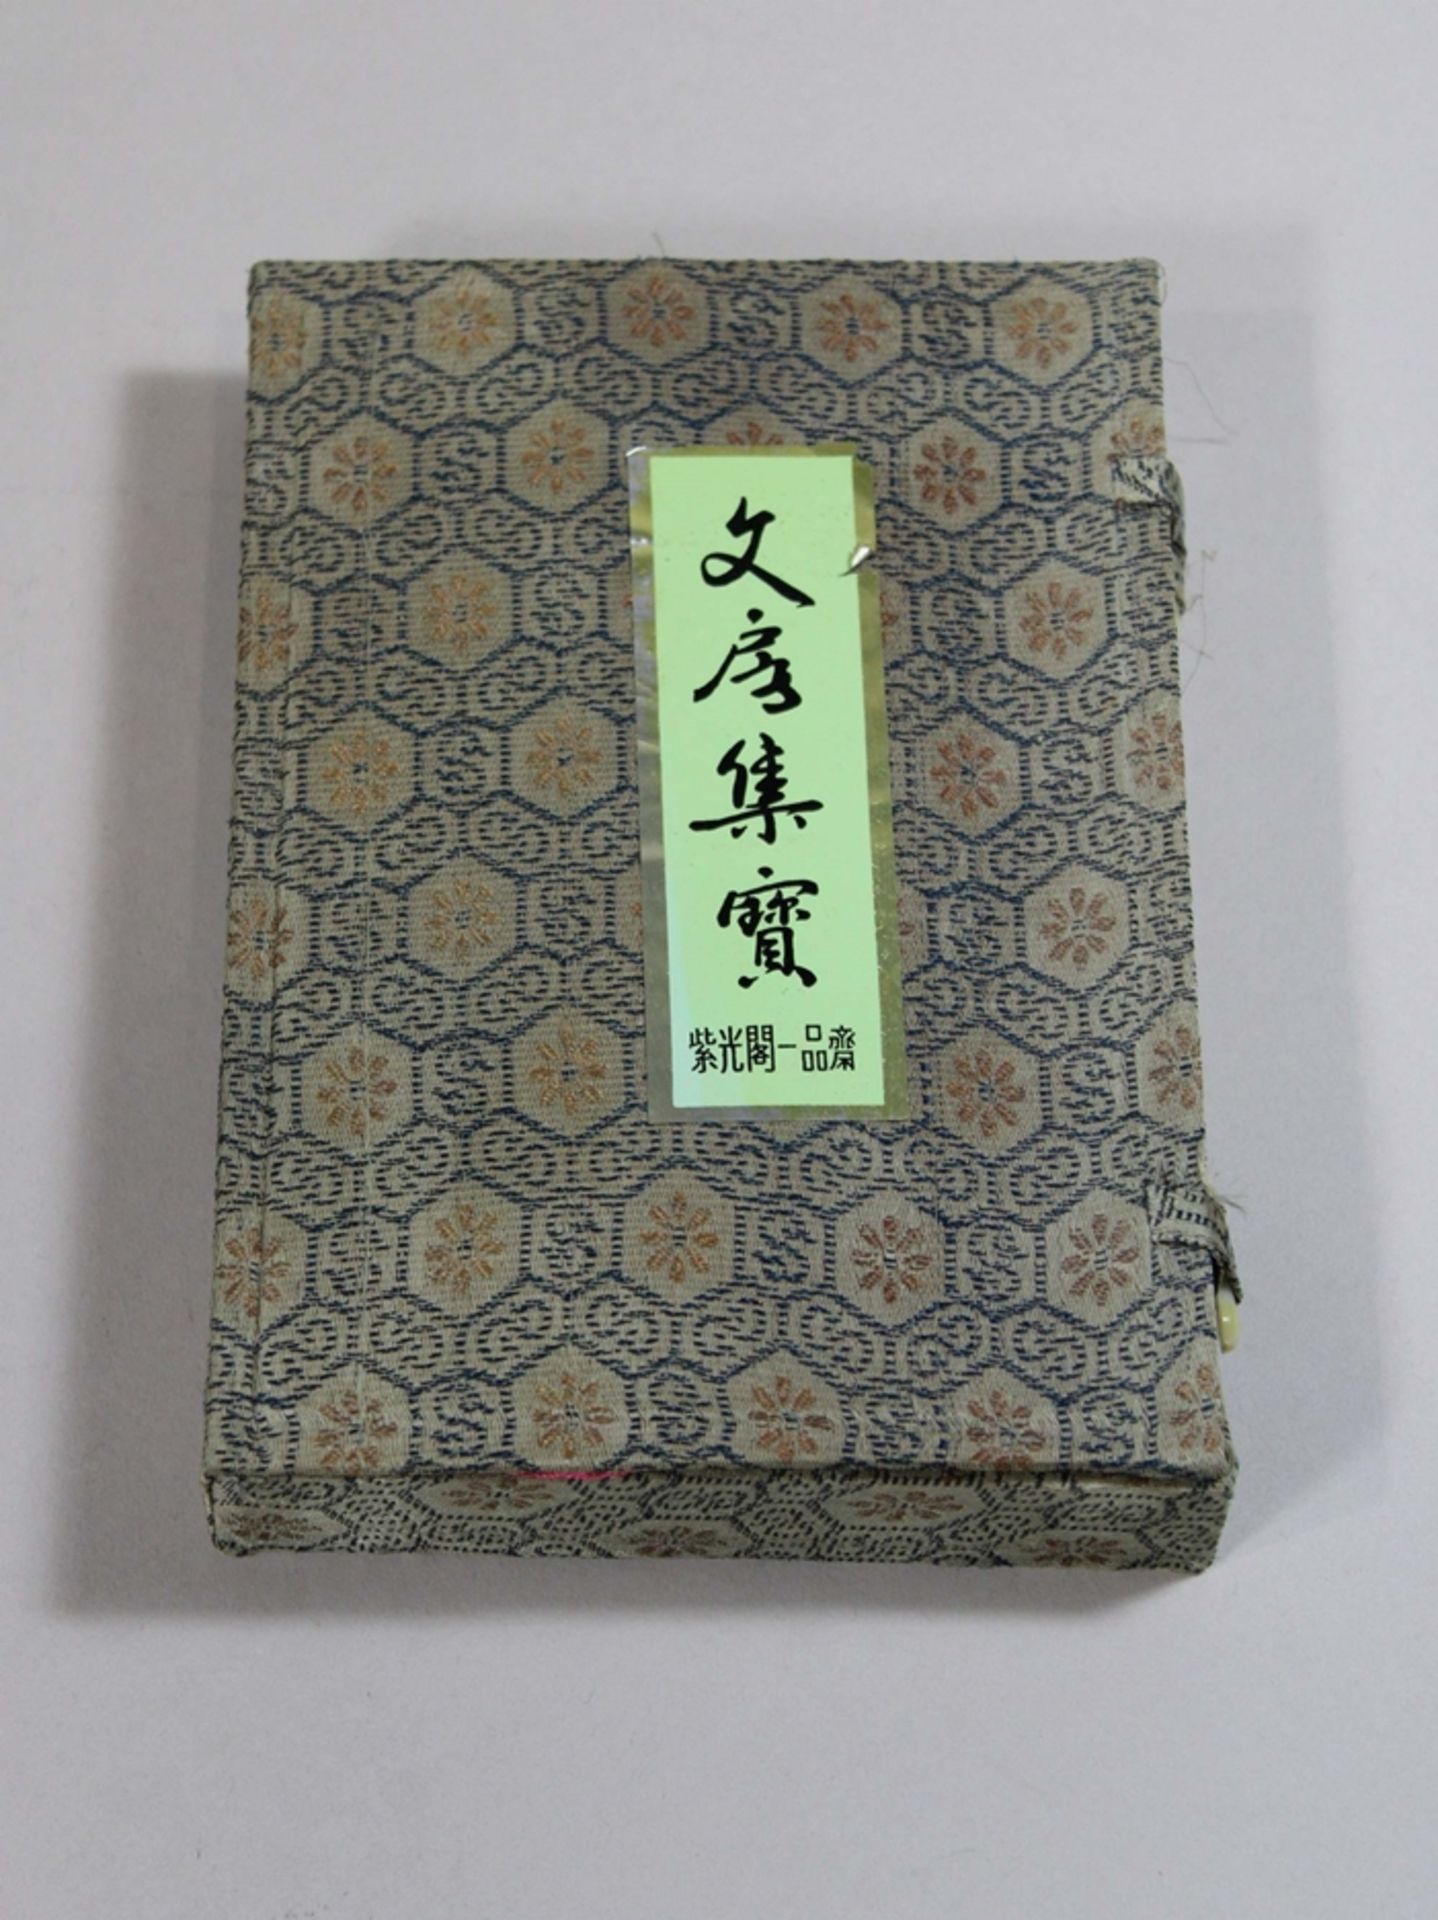 Chinesisches Kalligrafie-Set. Inhalt: 2 Pinsel, Marmorstempel ohne Zeichen, Pinselablage aus Porzel - Image 2 of 2